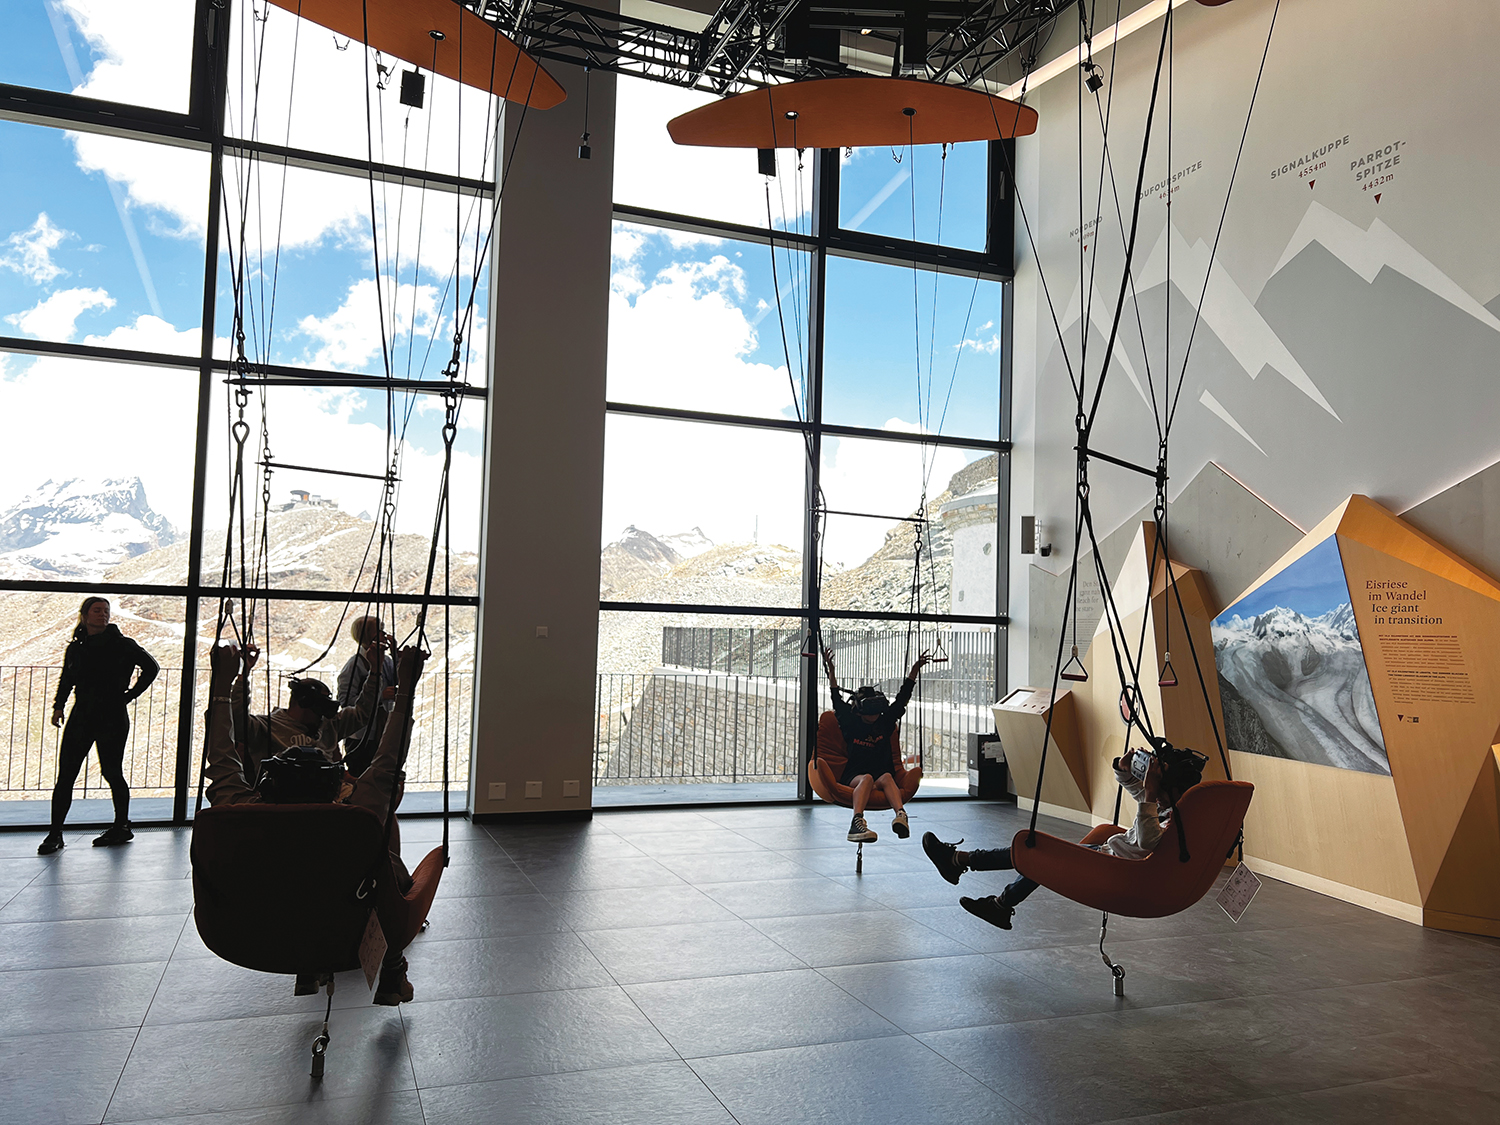 ゴルナーグラート駅のそばに立つ展示館『ズーム・ザ・マッターホルン』のVRで仮想飛行を。